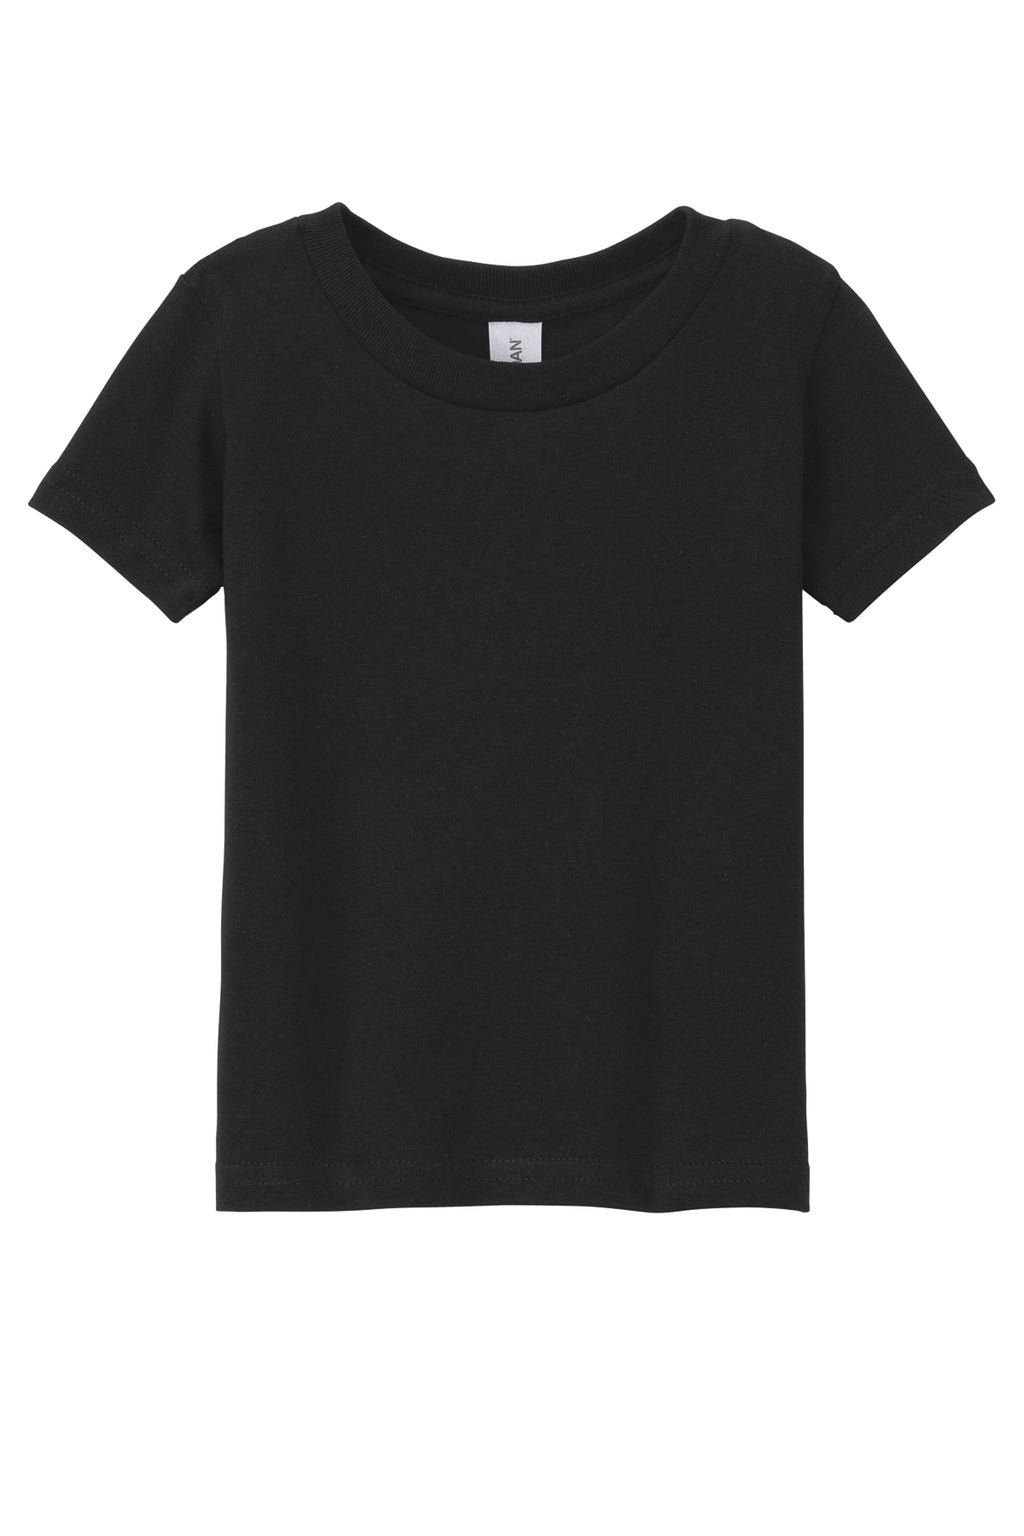 Gildan Toddler S/S Shirts Black